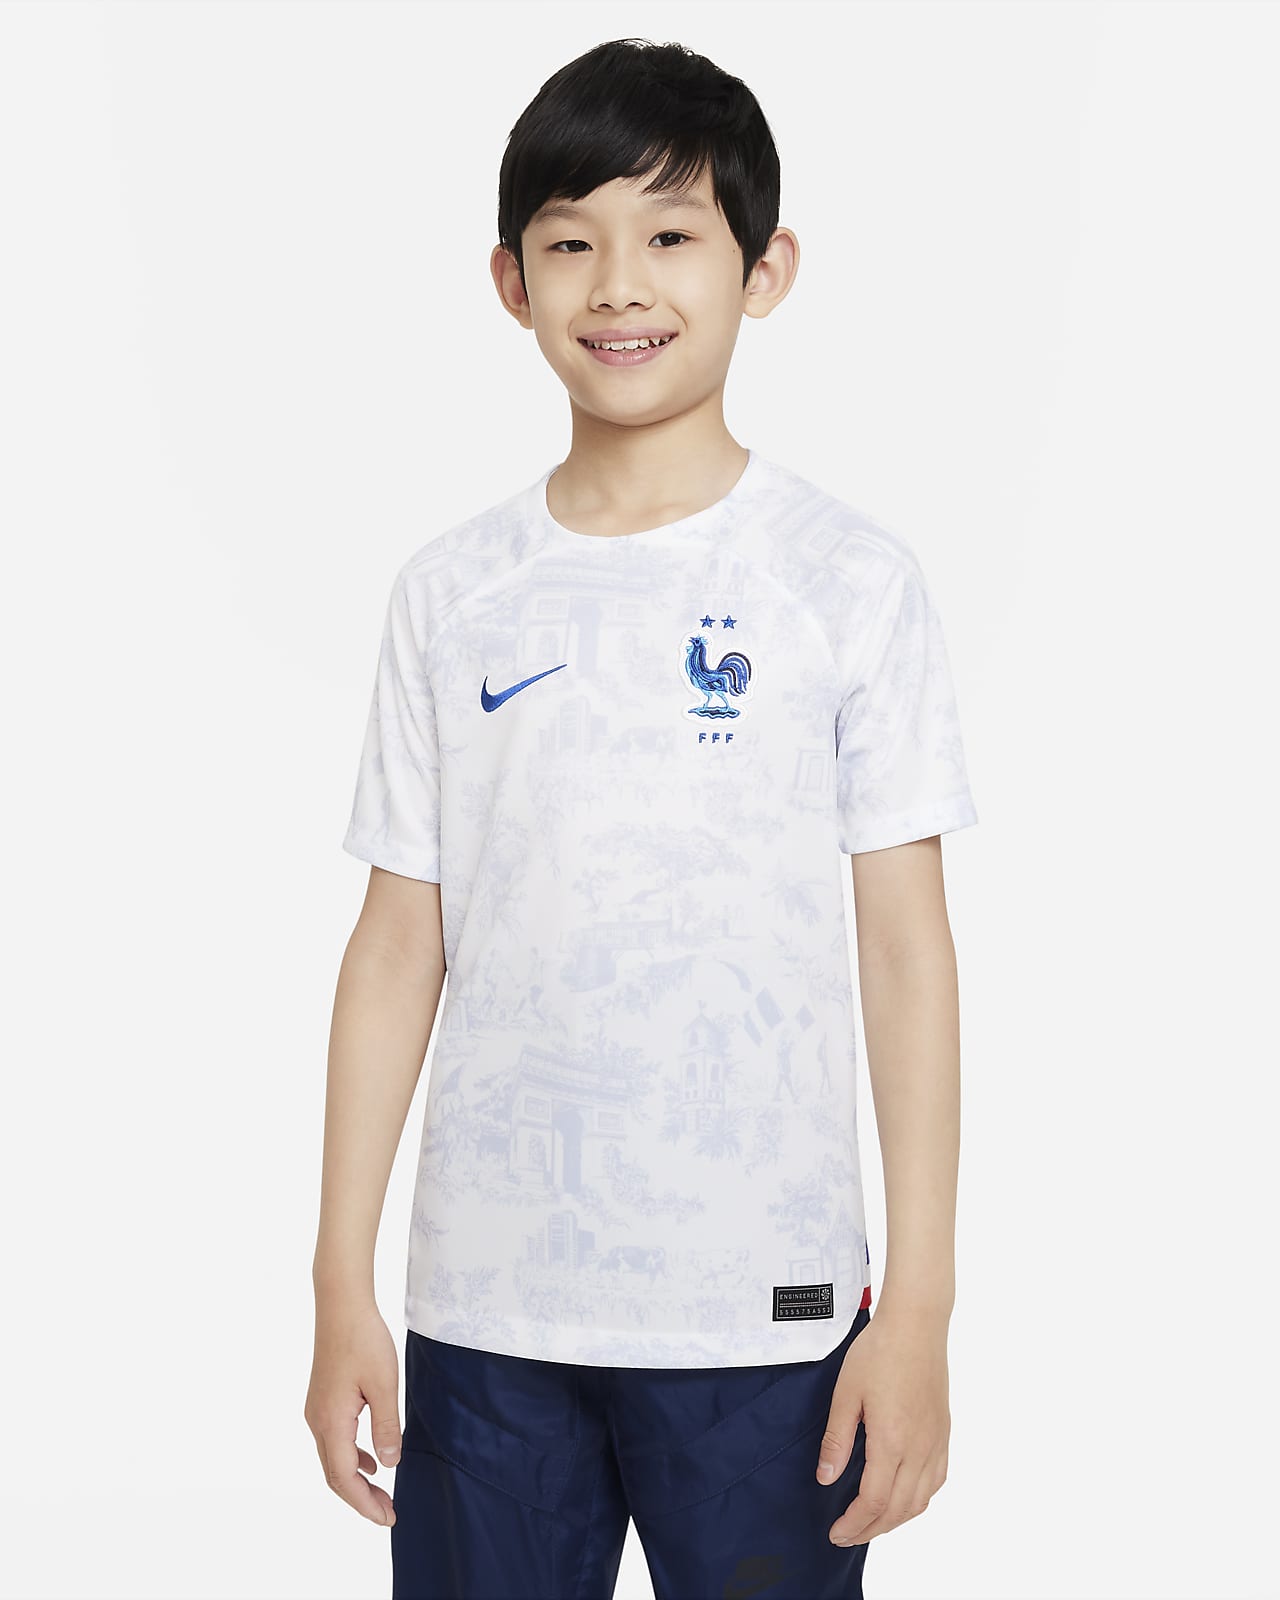 FFF 2022/23 Stadium Uit Nike Dri-FIT voetbalshirt voor kids